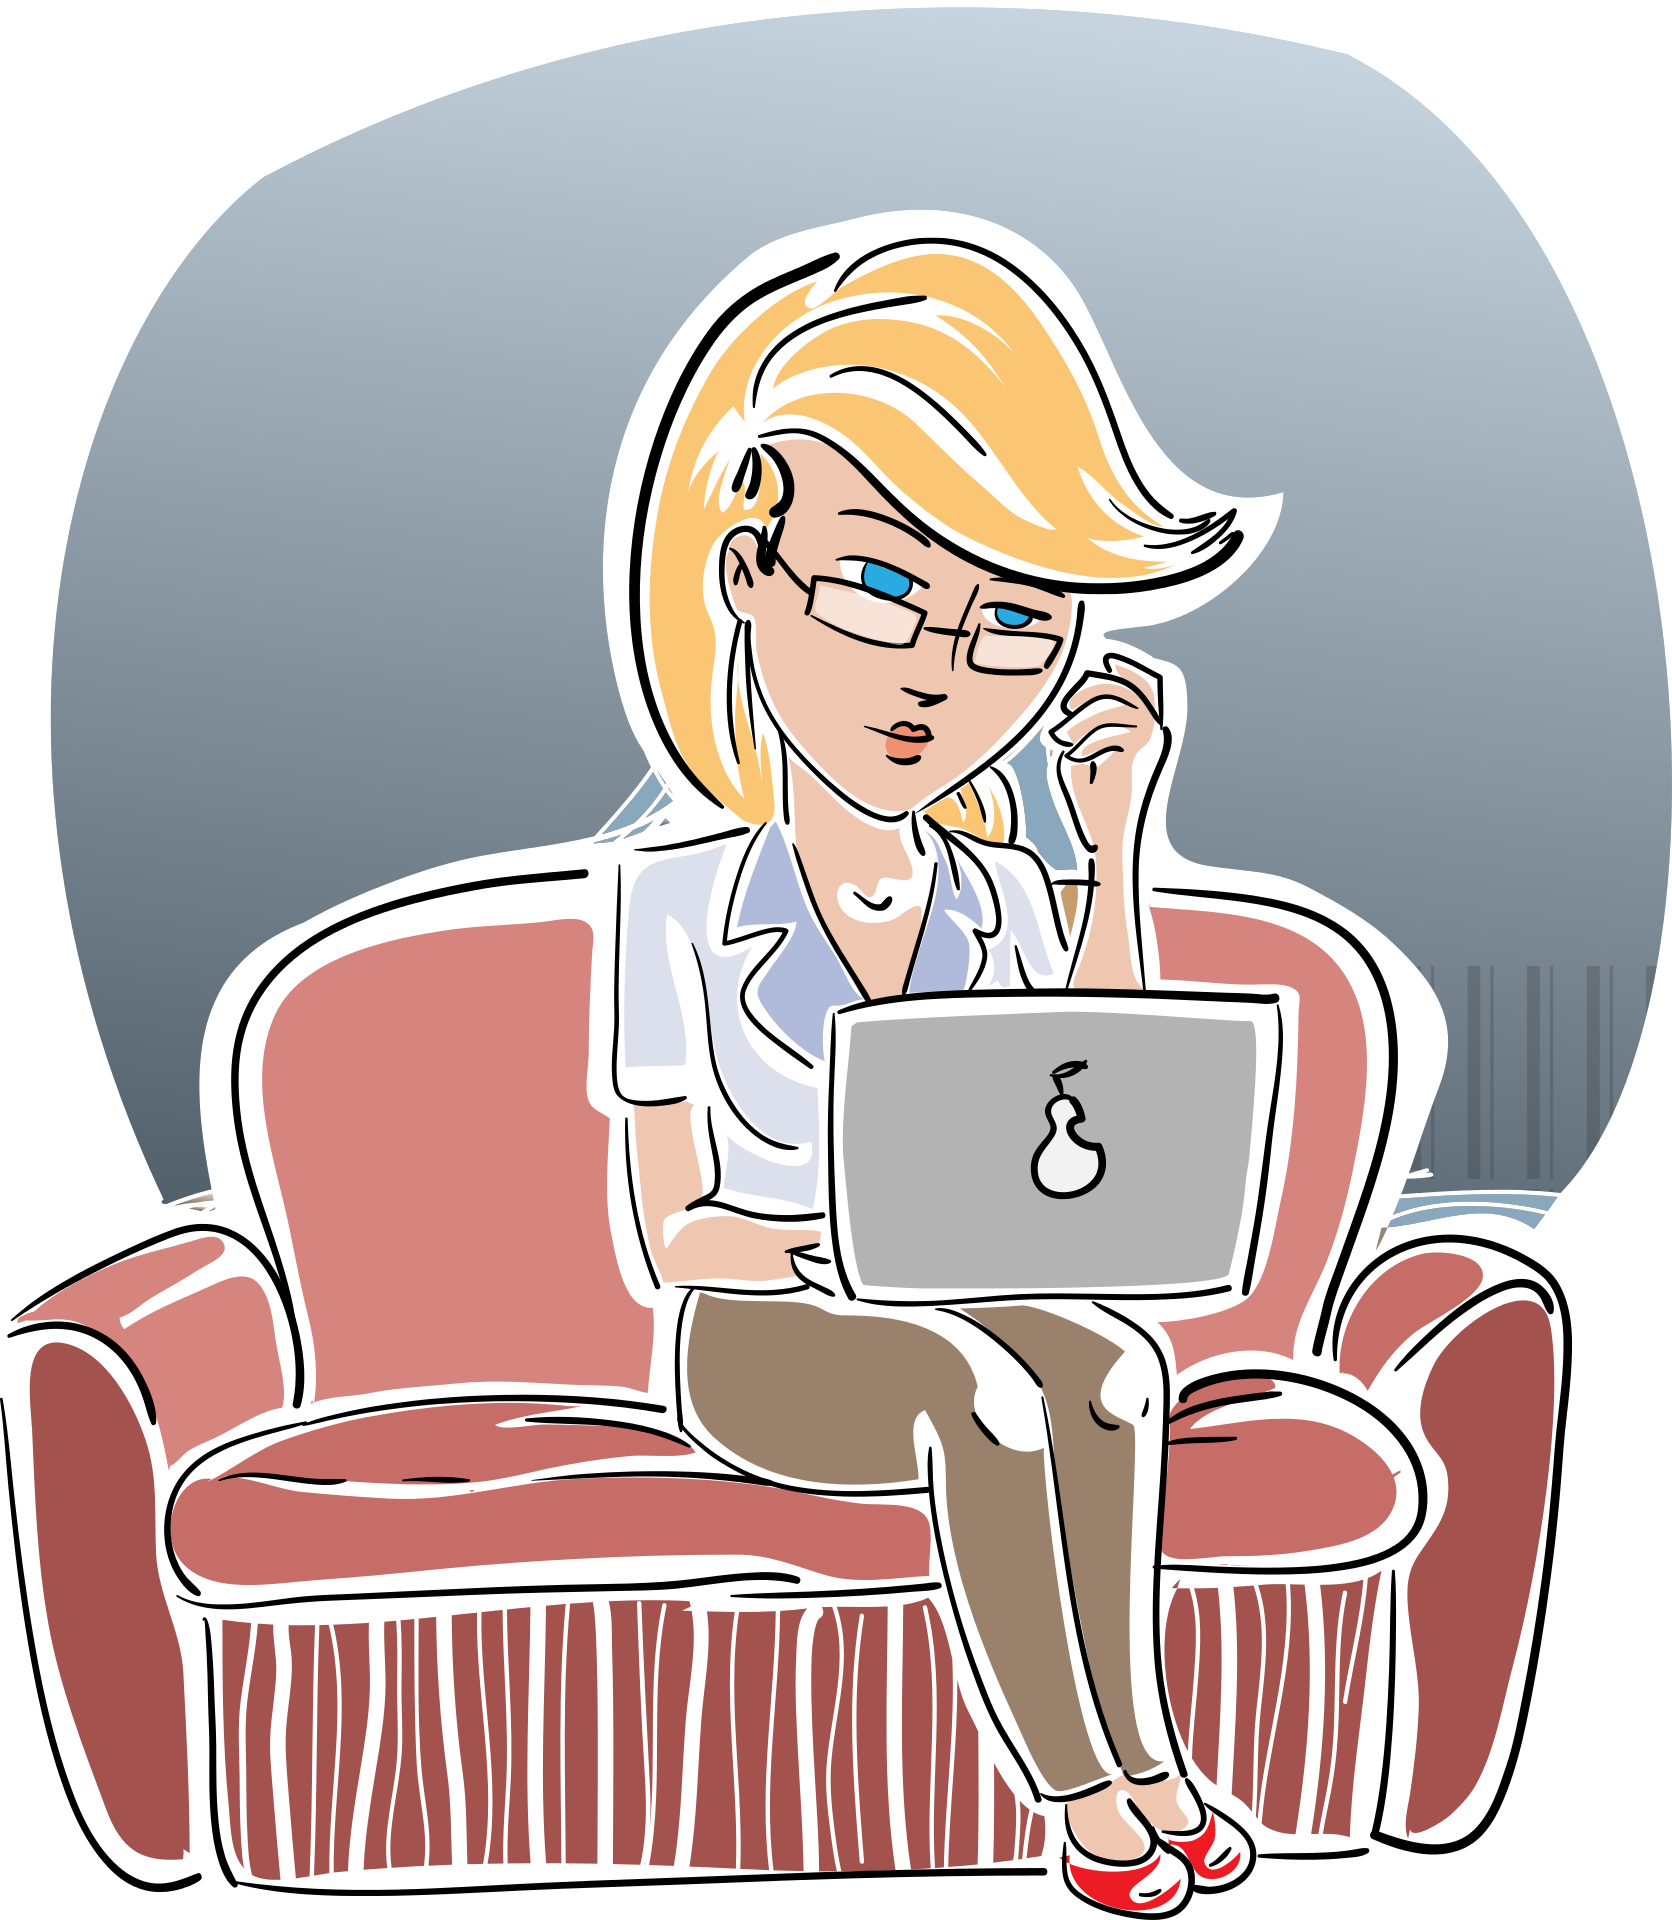 Frau mit blonden Haaren sitzt auf einer Couch und arbeitet an einem Laptop, während sie eine Brille trägt und ein Telefon in der Hand hält